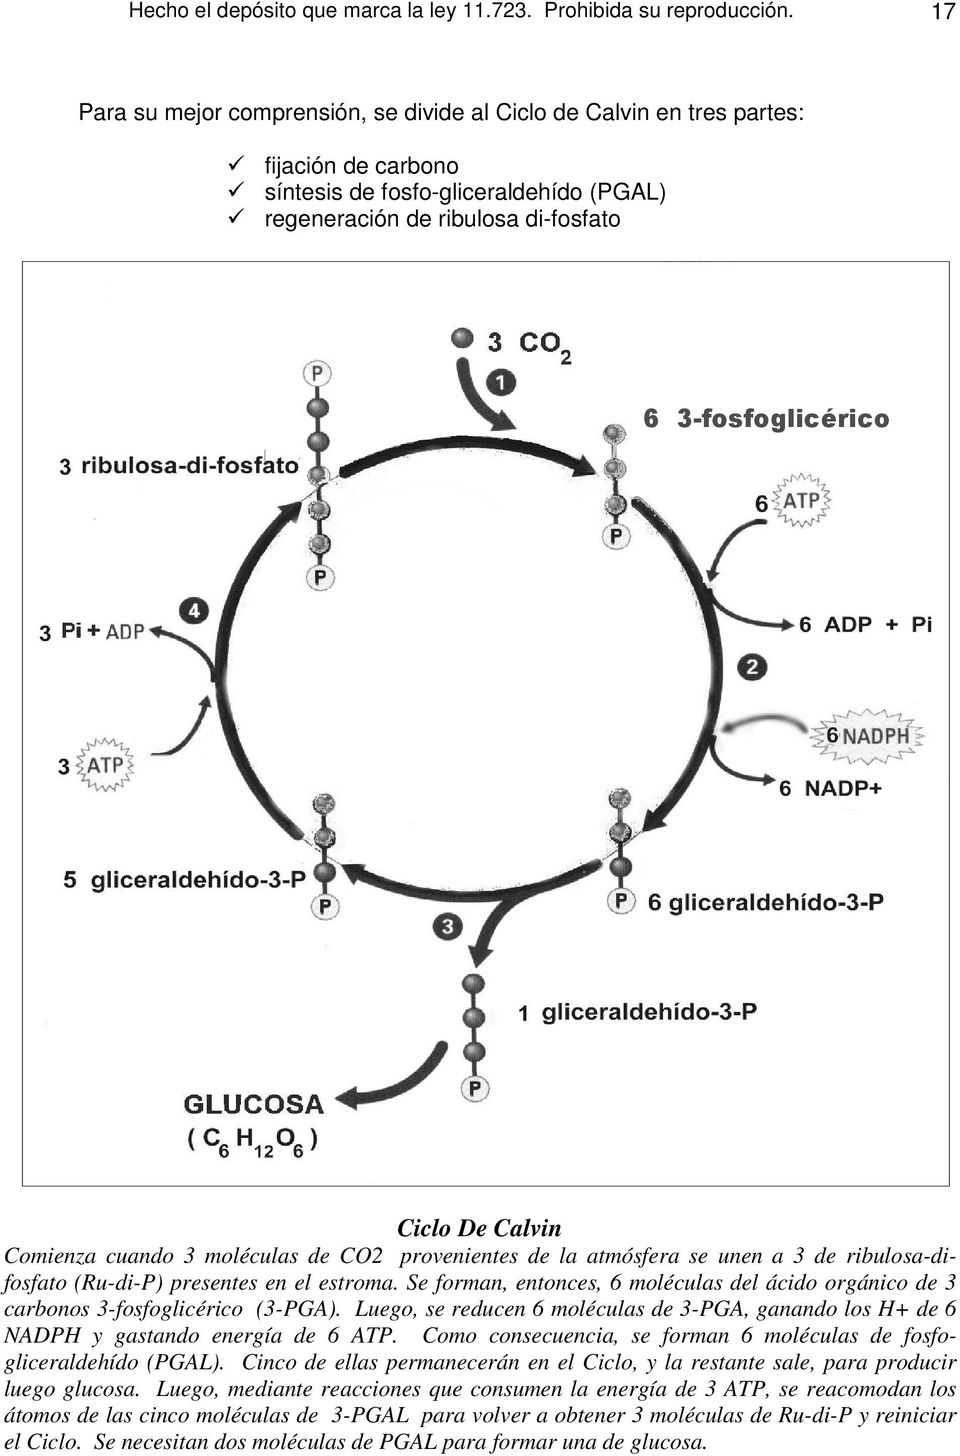 Calvin Comienza cuando 3 moléculas de CO2 provenientes de la atmósfera se unen a 3 de ribulosa-difosfato (Ru-di-P) presentes en el estroma.